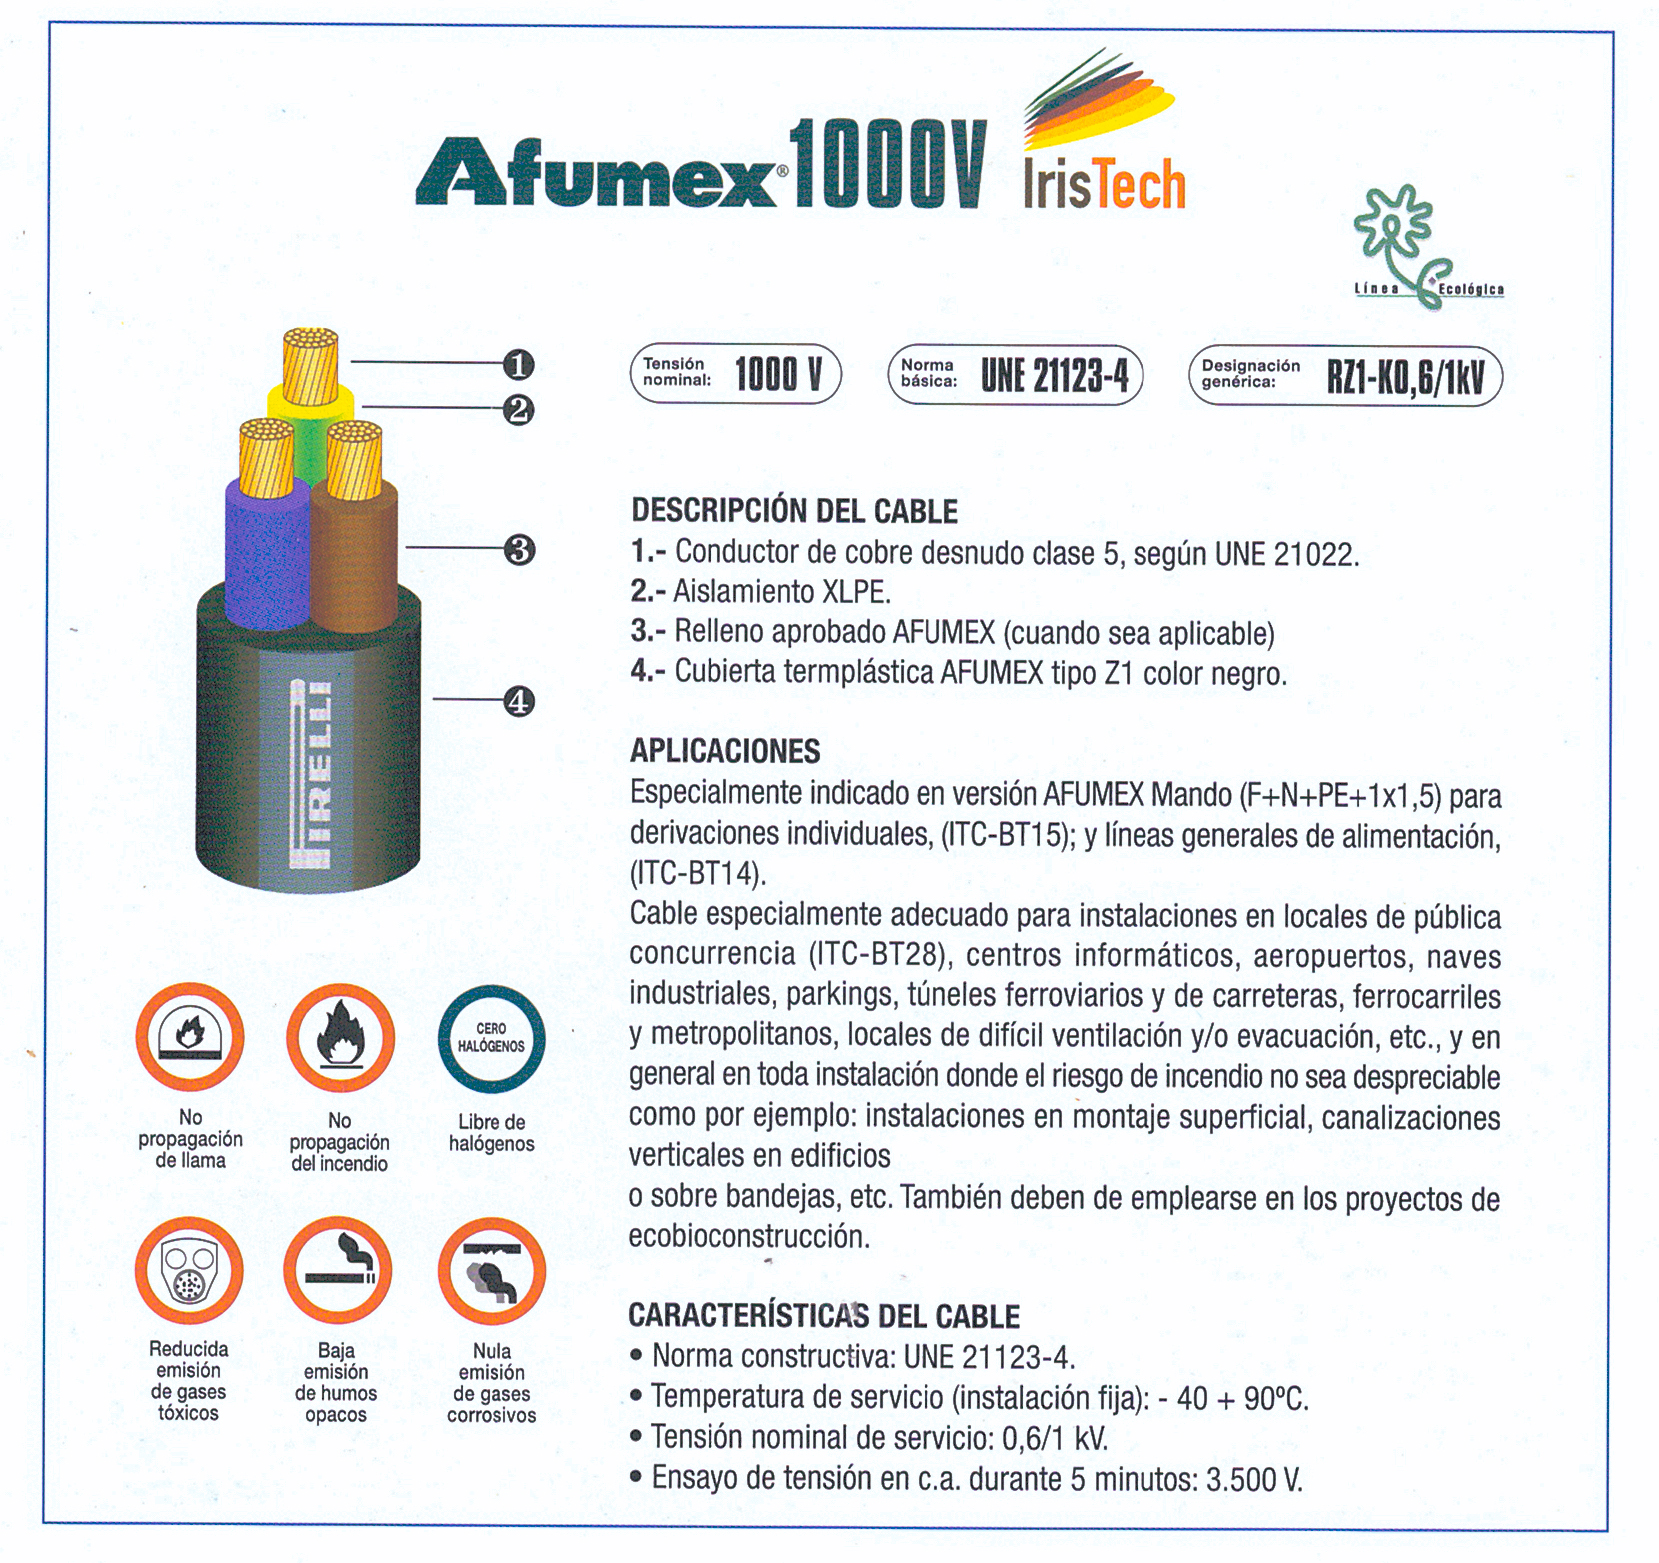 Afumex 1000V